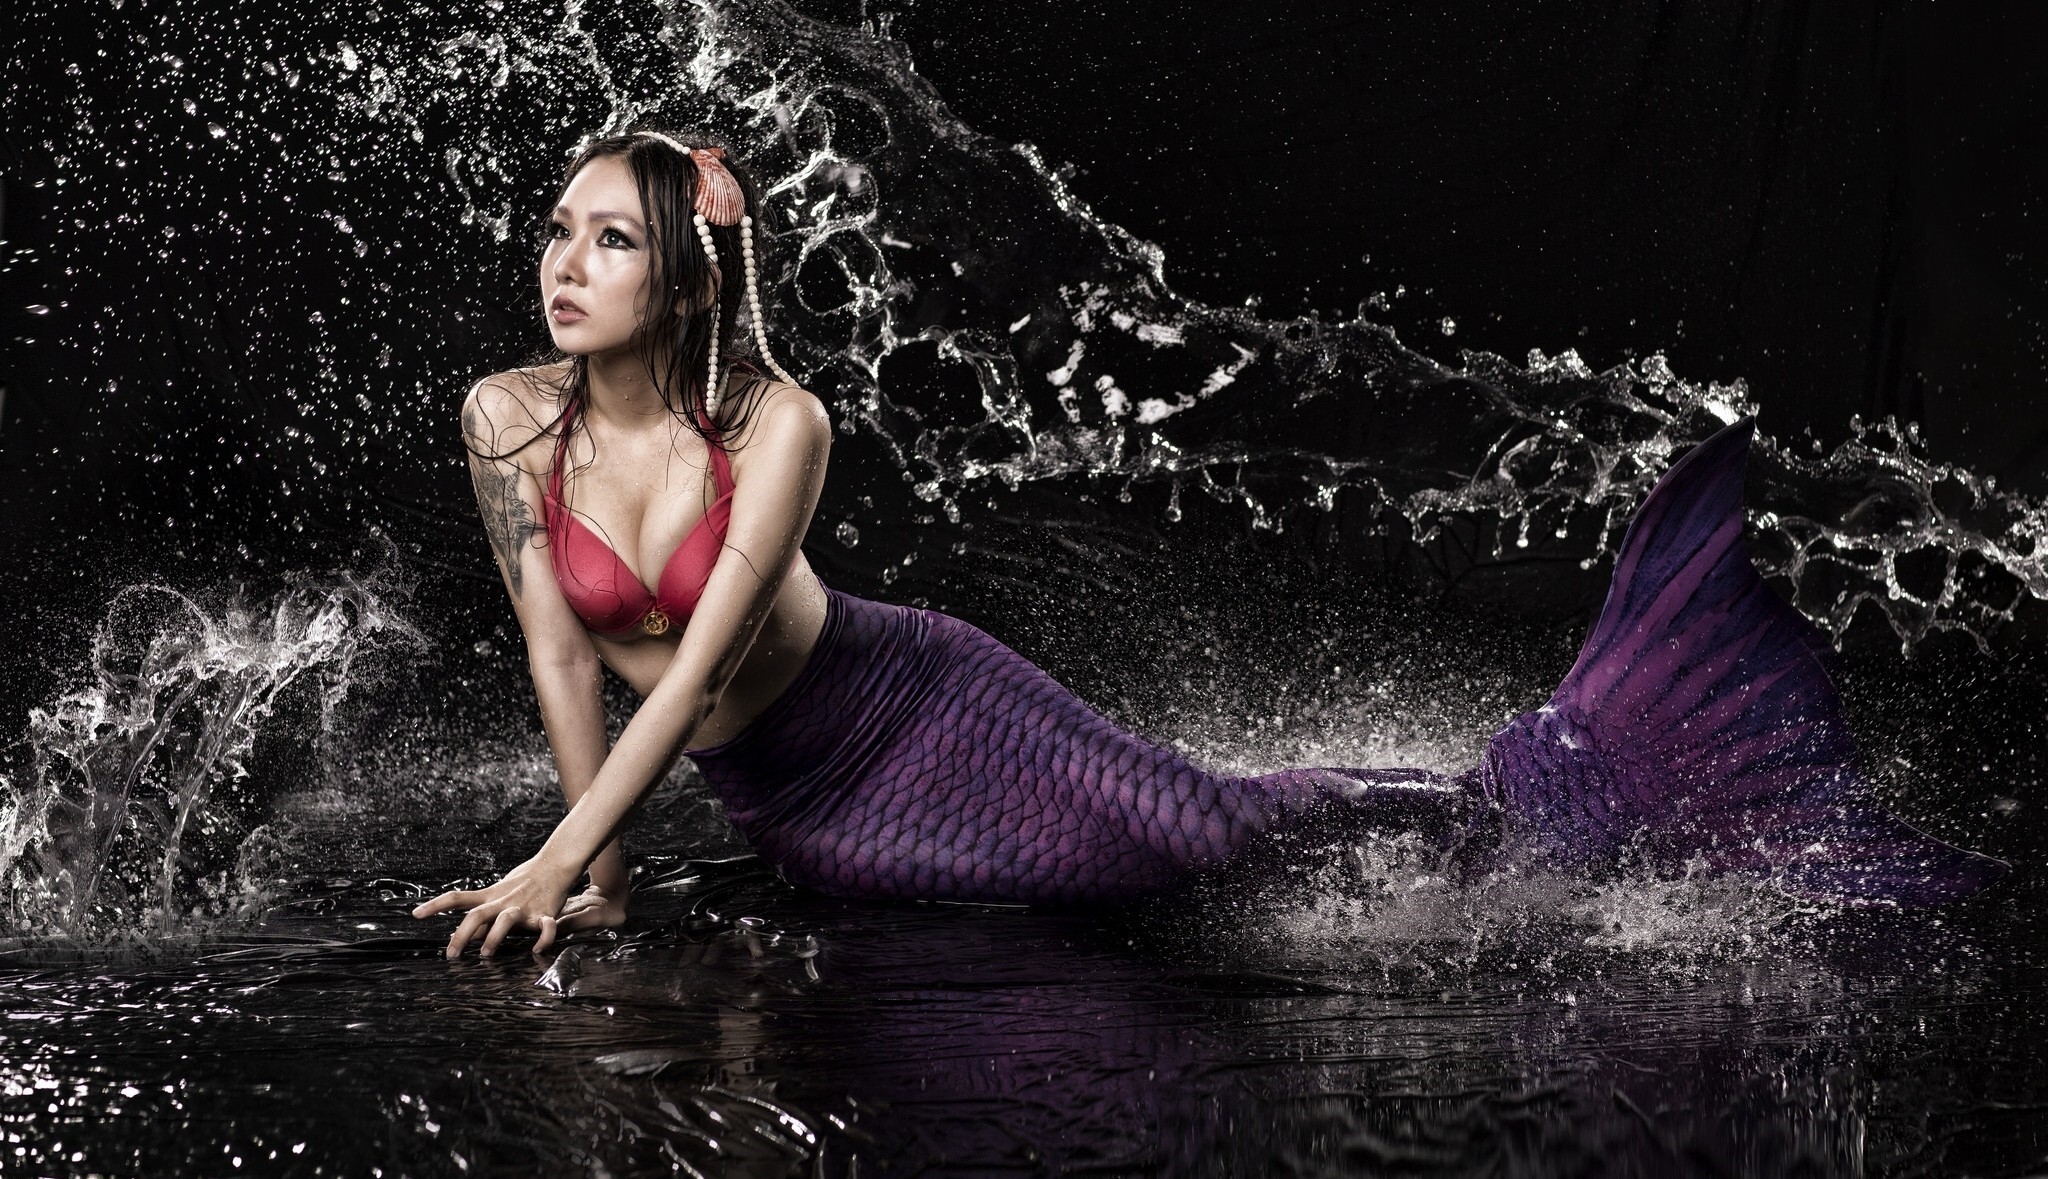 People 2048x1179 fantasy art women model mermaids Asian water liquid bikini top bikini red bikini